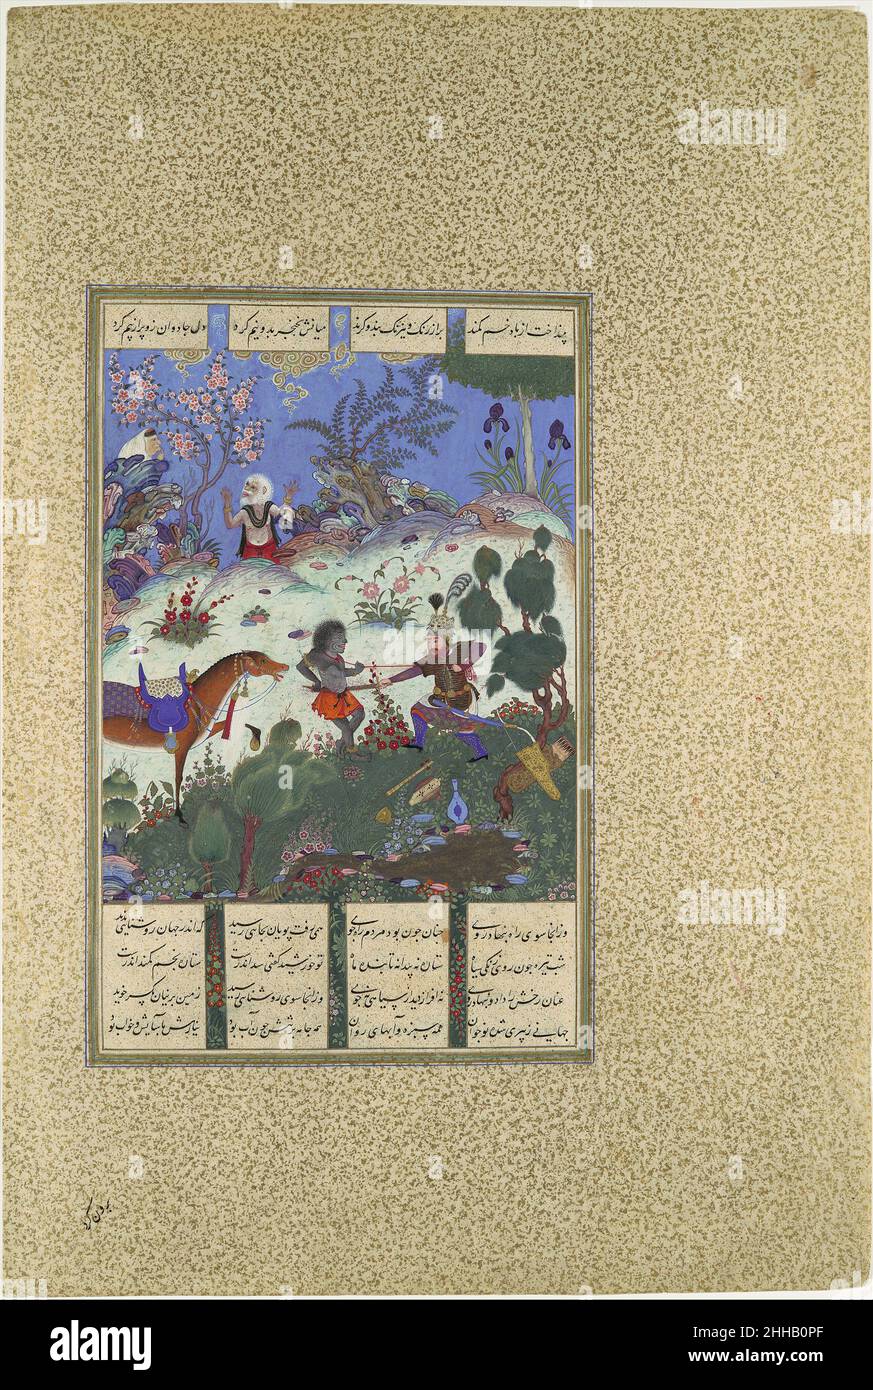 'Rustams Vierter Kurs, Er spaltet eine Hexe', Folio 120V aus dem Shahnama (Buch der Könige) von Shah Tahmasp ca. 1525 Abu'l Qasim Firdausi der Held Rustam unterzog sich auf seinem Weg zur Rettung von Schah Kai Kavus sieben Tapferitätstests. Der Künstler hat den Höhepunkt von Rustams viertem Kurs illustriert, als das schöne Mädchen, das ihn betörte, sich wieder in die Hexe verwandelte, die sie wirklich war, um mit seinem Schwert ausgeliefert zu werden. Der Zauberer im Hintergrund, der vor Entsetzen die Hände hochhebt, ist aus turkmenischen Kunstquellen entlehnt, während das Profil der Zauberin eine übertriebene Version des konventionellen ist Stockfoto